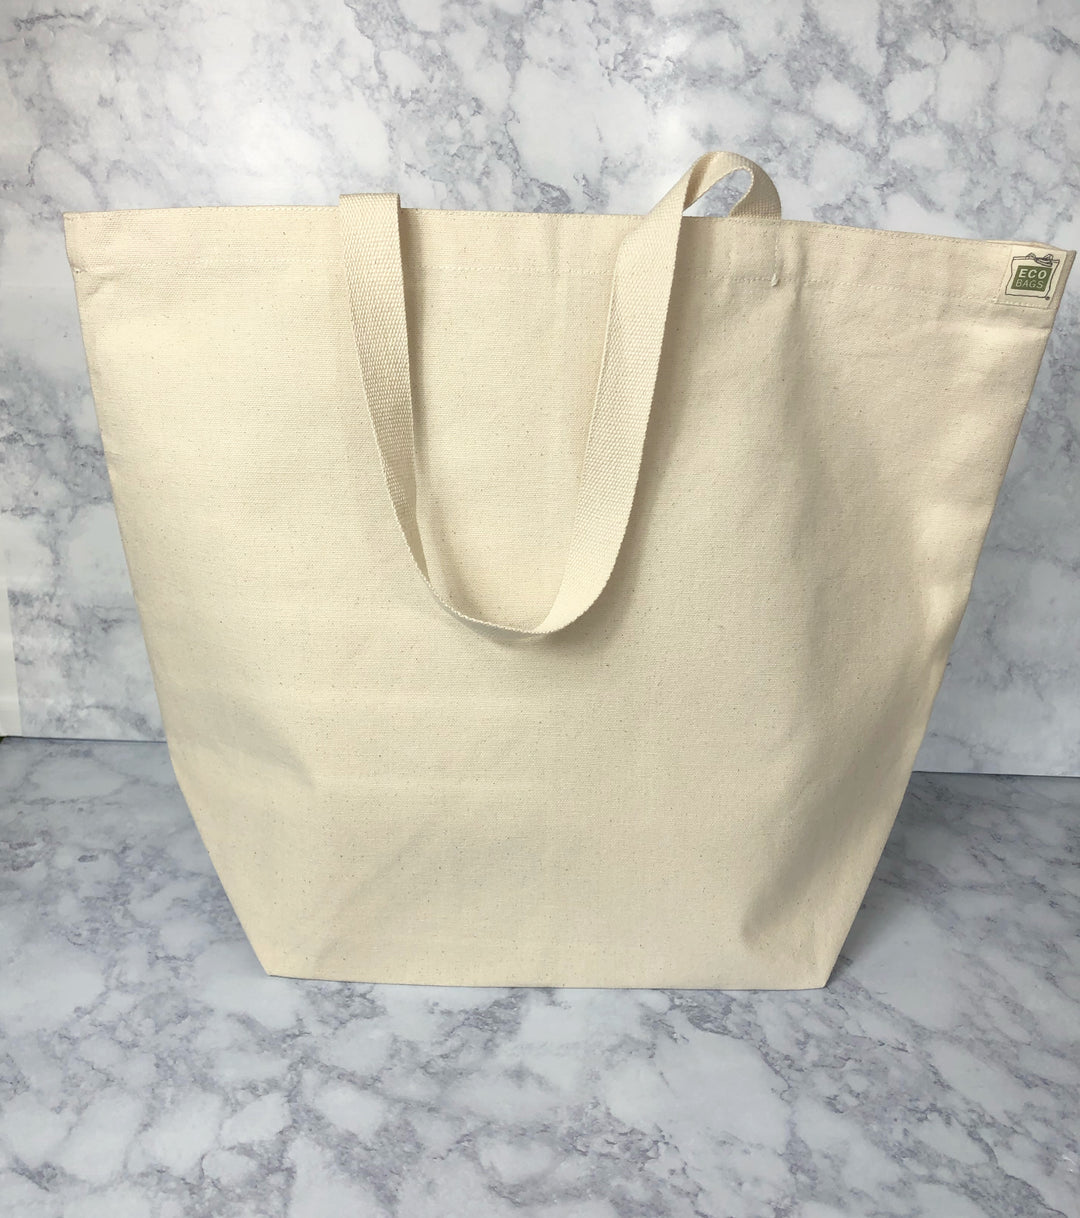 eat local(s) - tote bag